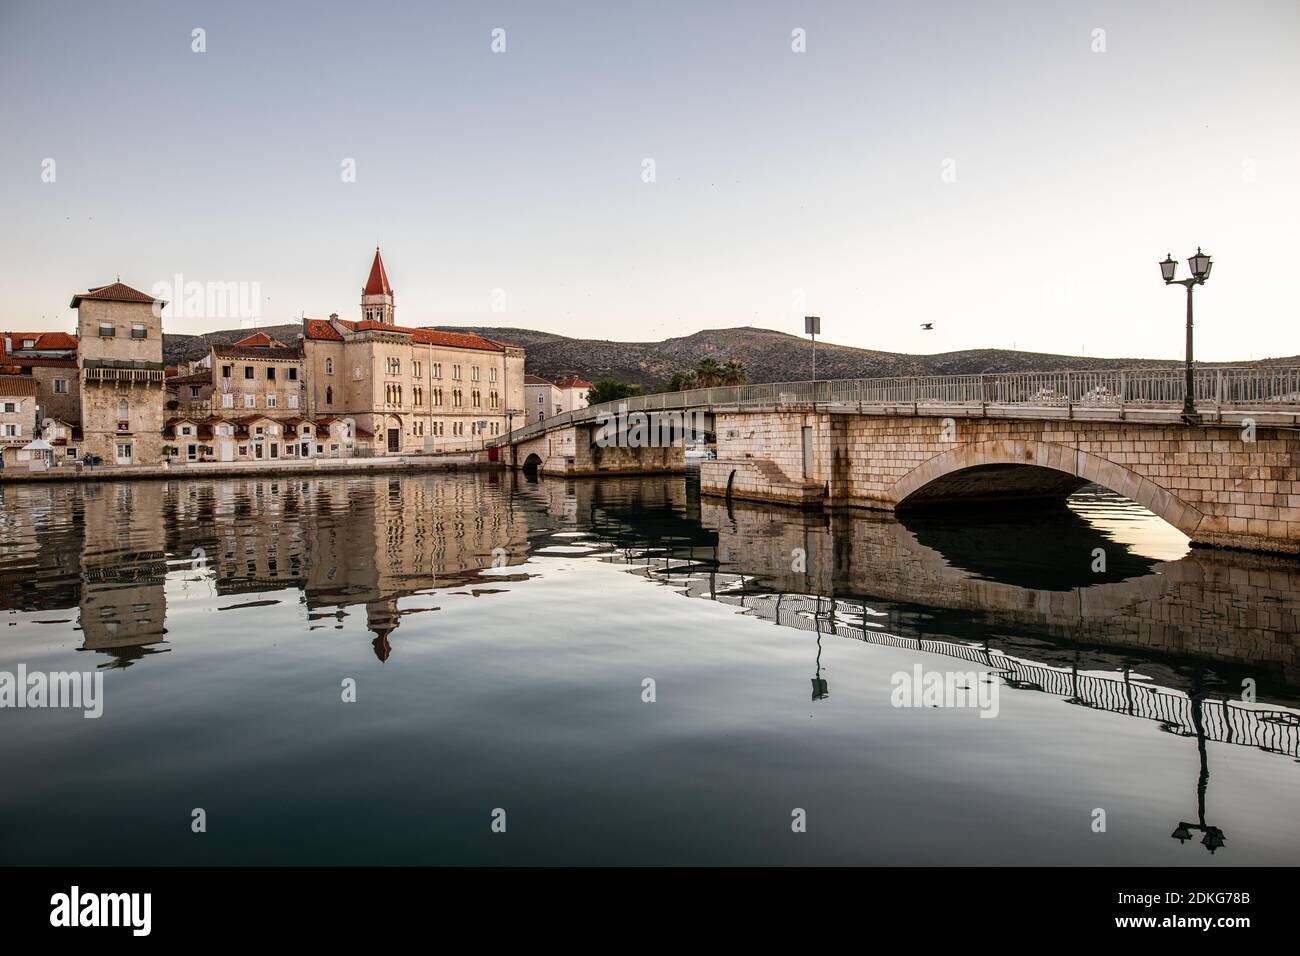 Il ponte per la città vecchia di Trogir, Croazia. La città è patrimonio dell'umanità dell'UNESCO. L'immagine mostra l'acqua calma intorno al ponte all'ora del mattino. Sullo sfondo si può vedere la torre della Cattedrale di San Lorenzo. Foto Stock